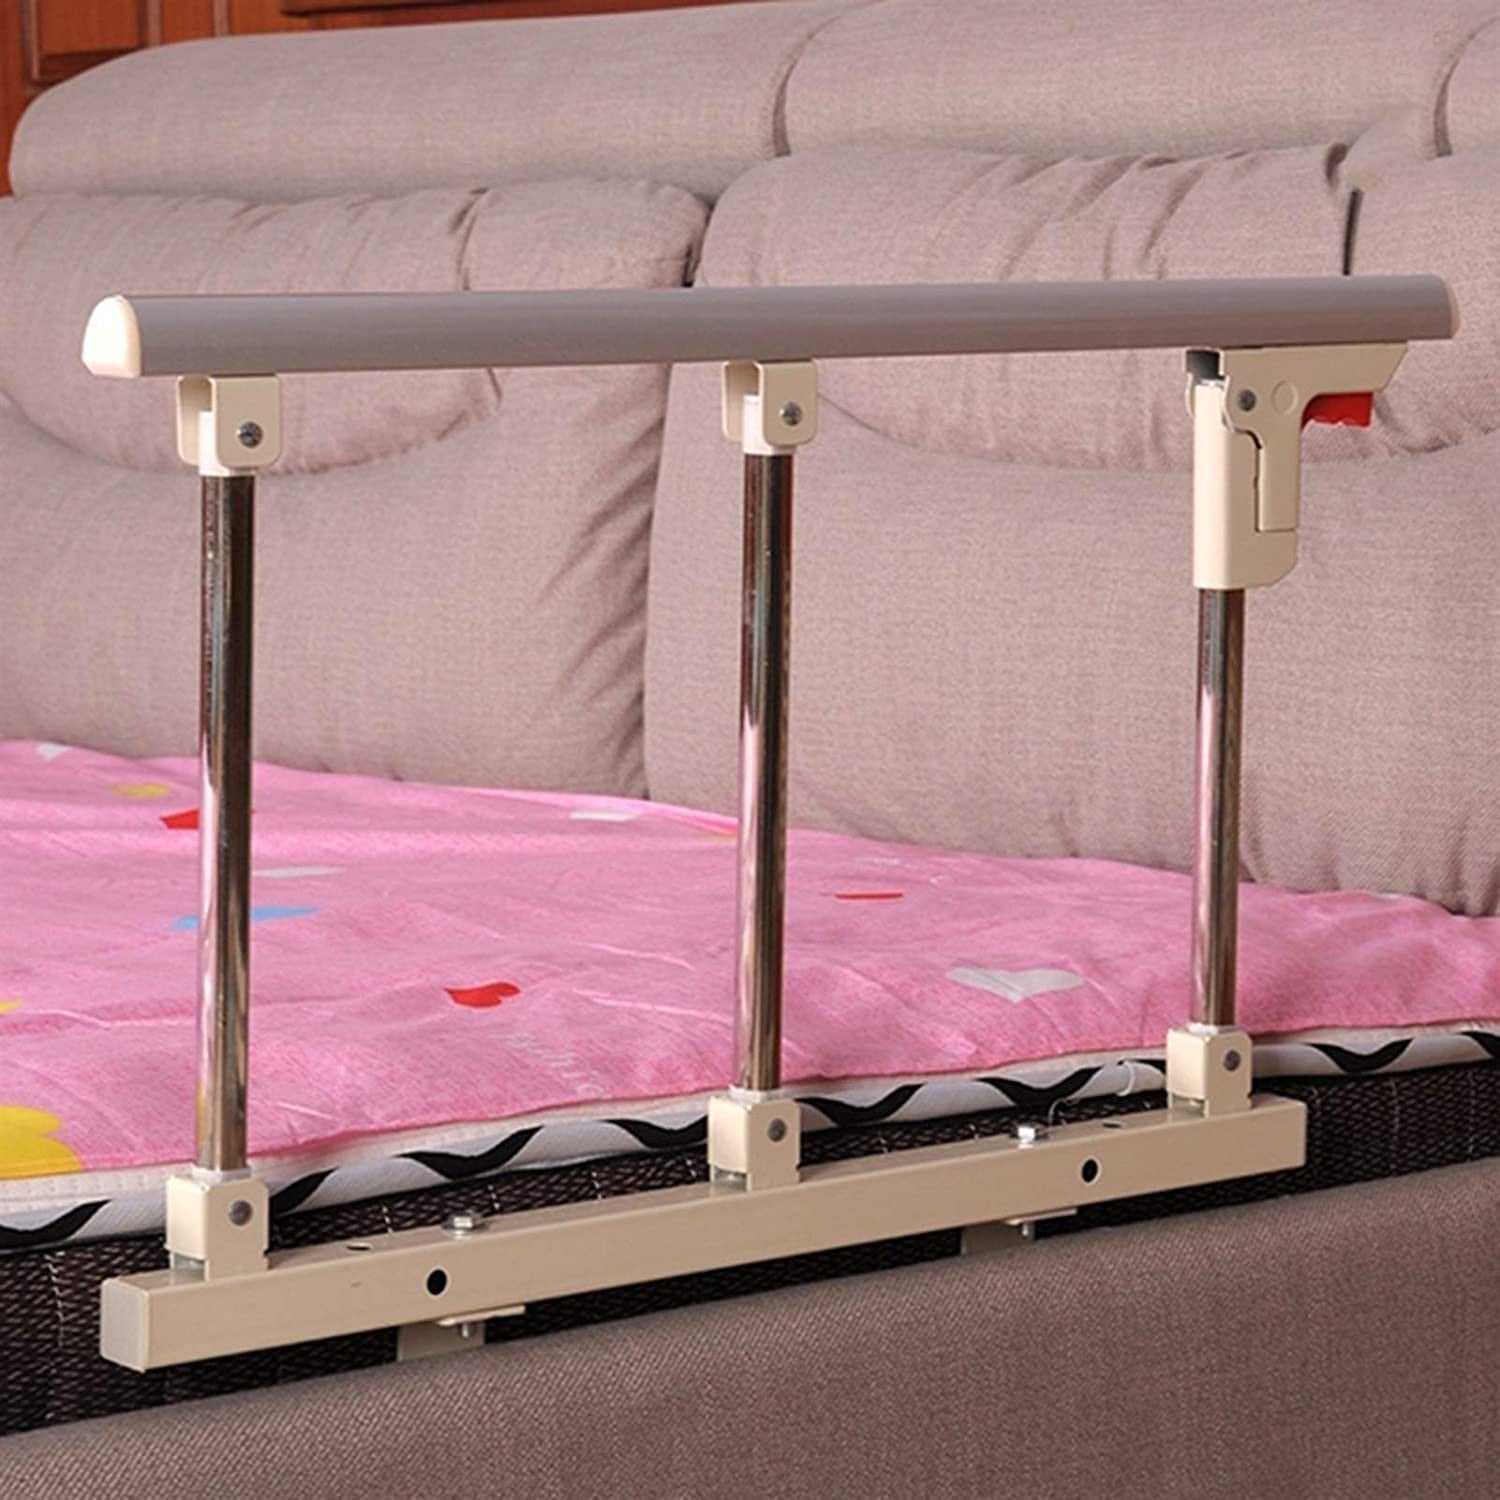 BANBALOO Rieles de cama para adultos mayores | Restricciones de cama |  Barandillas de protección de cama para adultos | Barras de cama para  personas